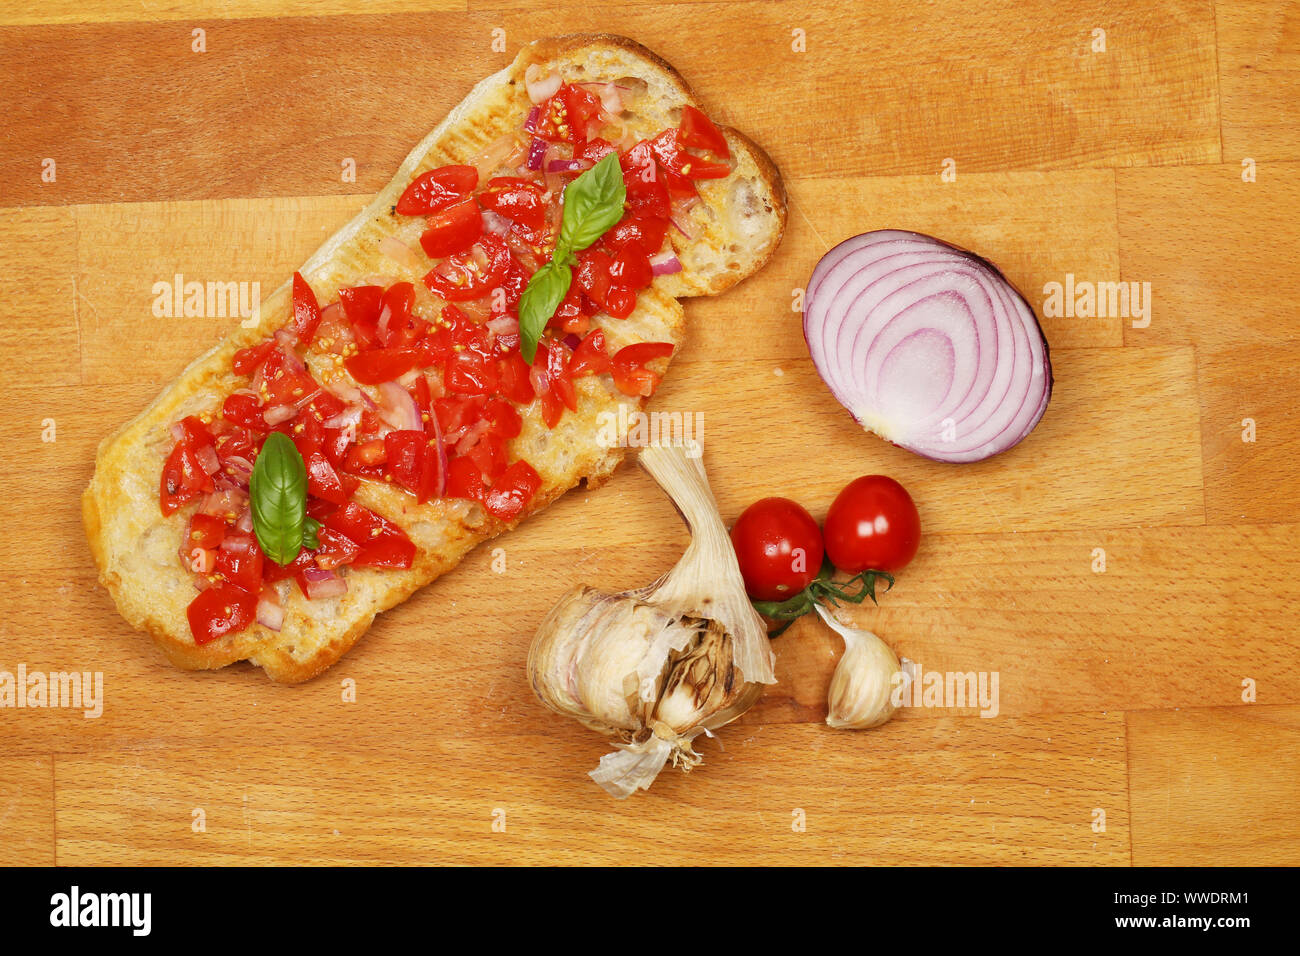 Bruschetta Tomate et oignon rouge et ingrédients sur une planche à découper en bois, vue du dessus Banque D'Images